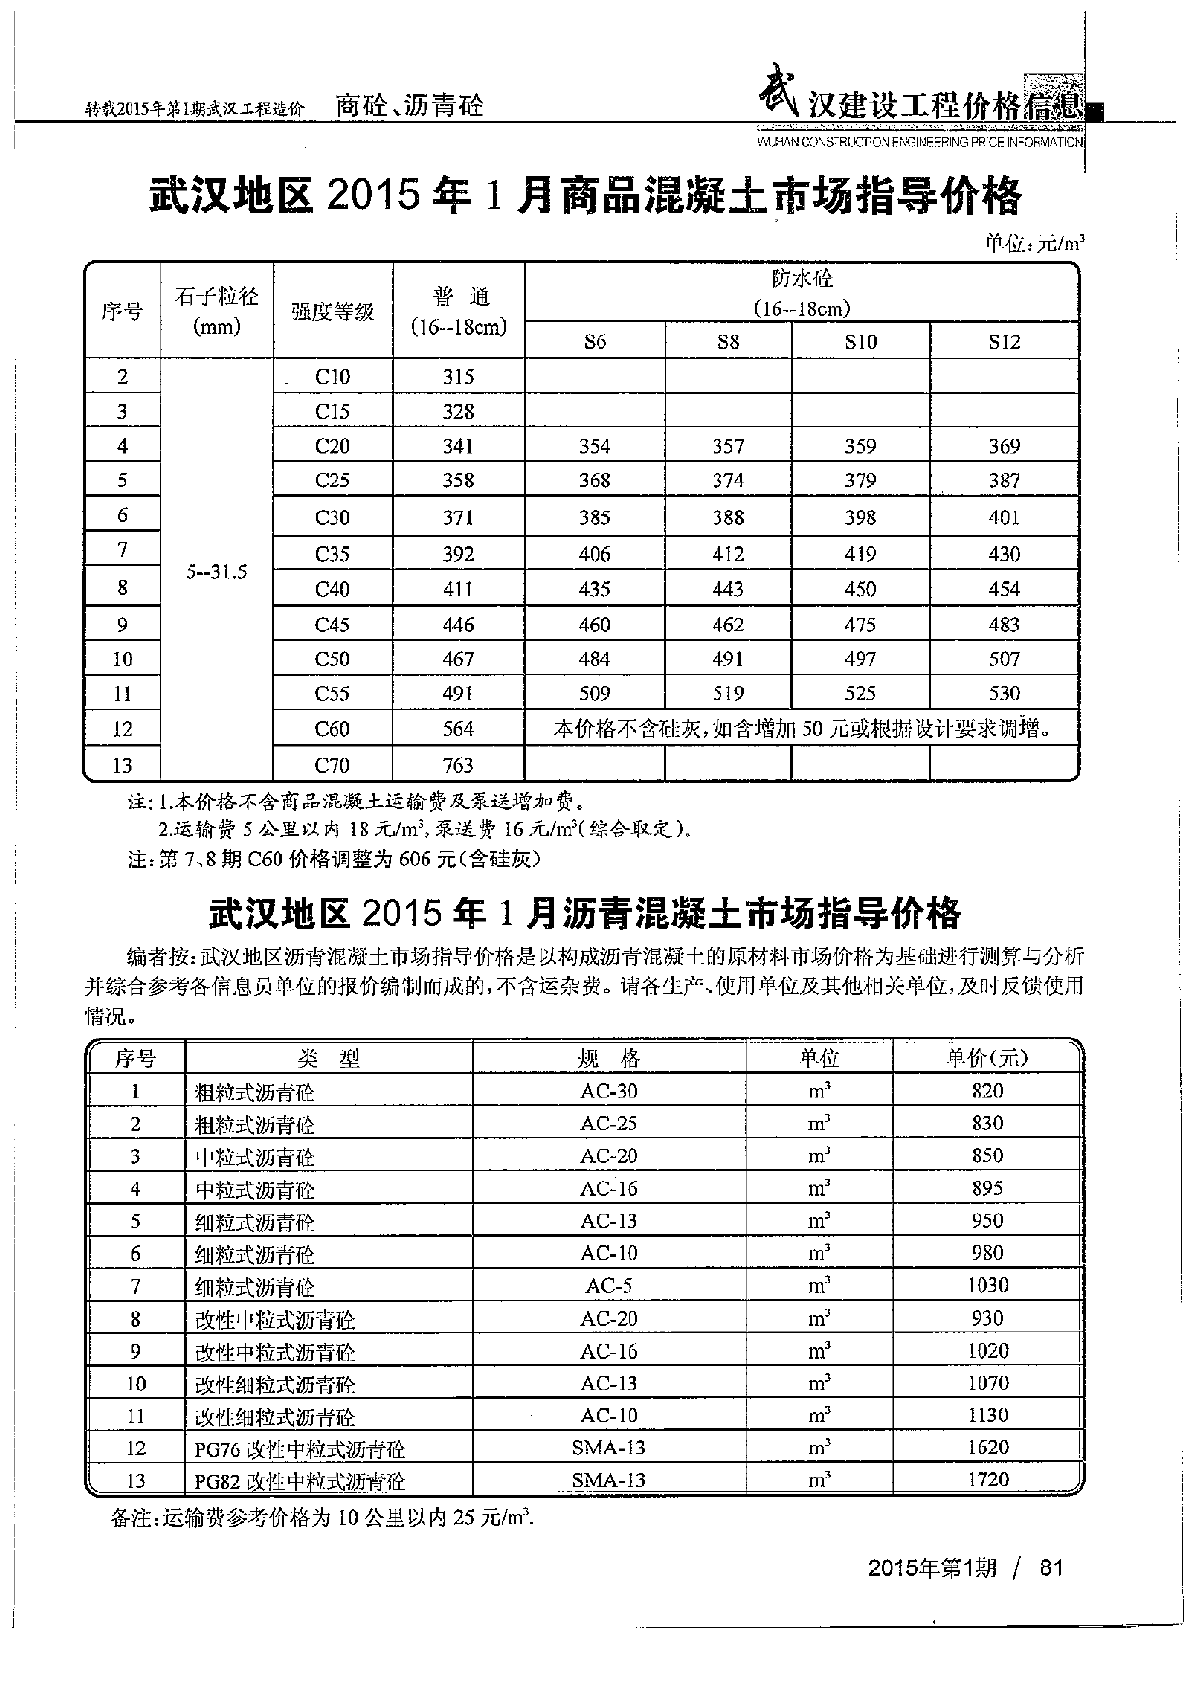 【武汉】商品混凝土市场指导价格(2015年1月)